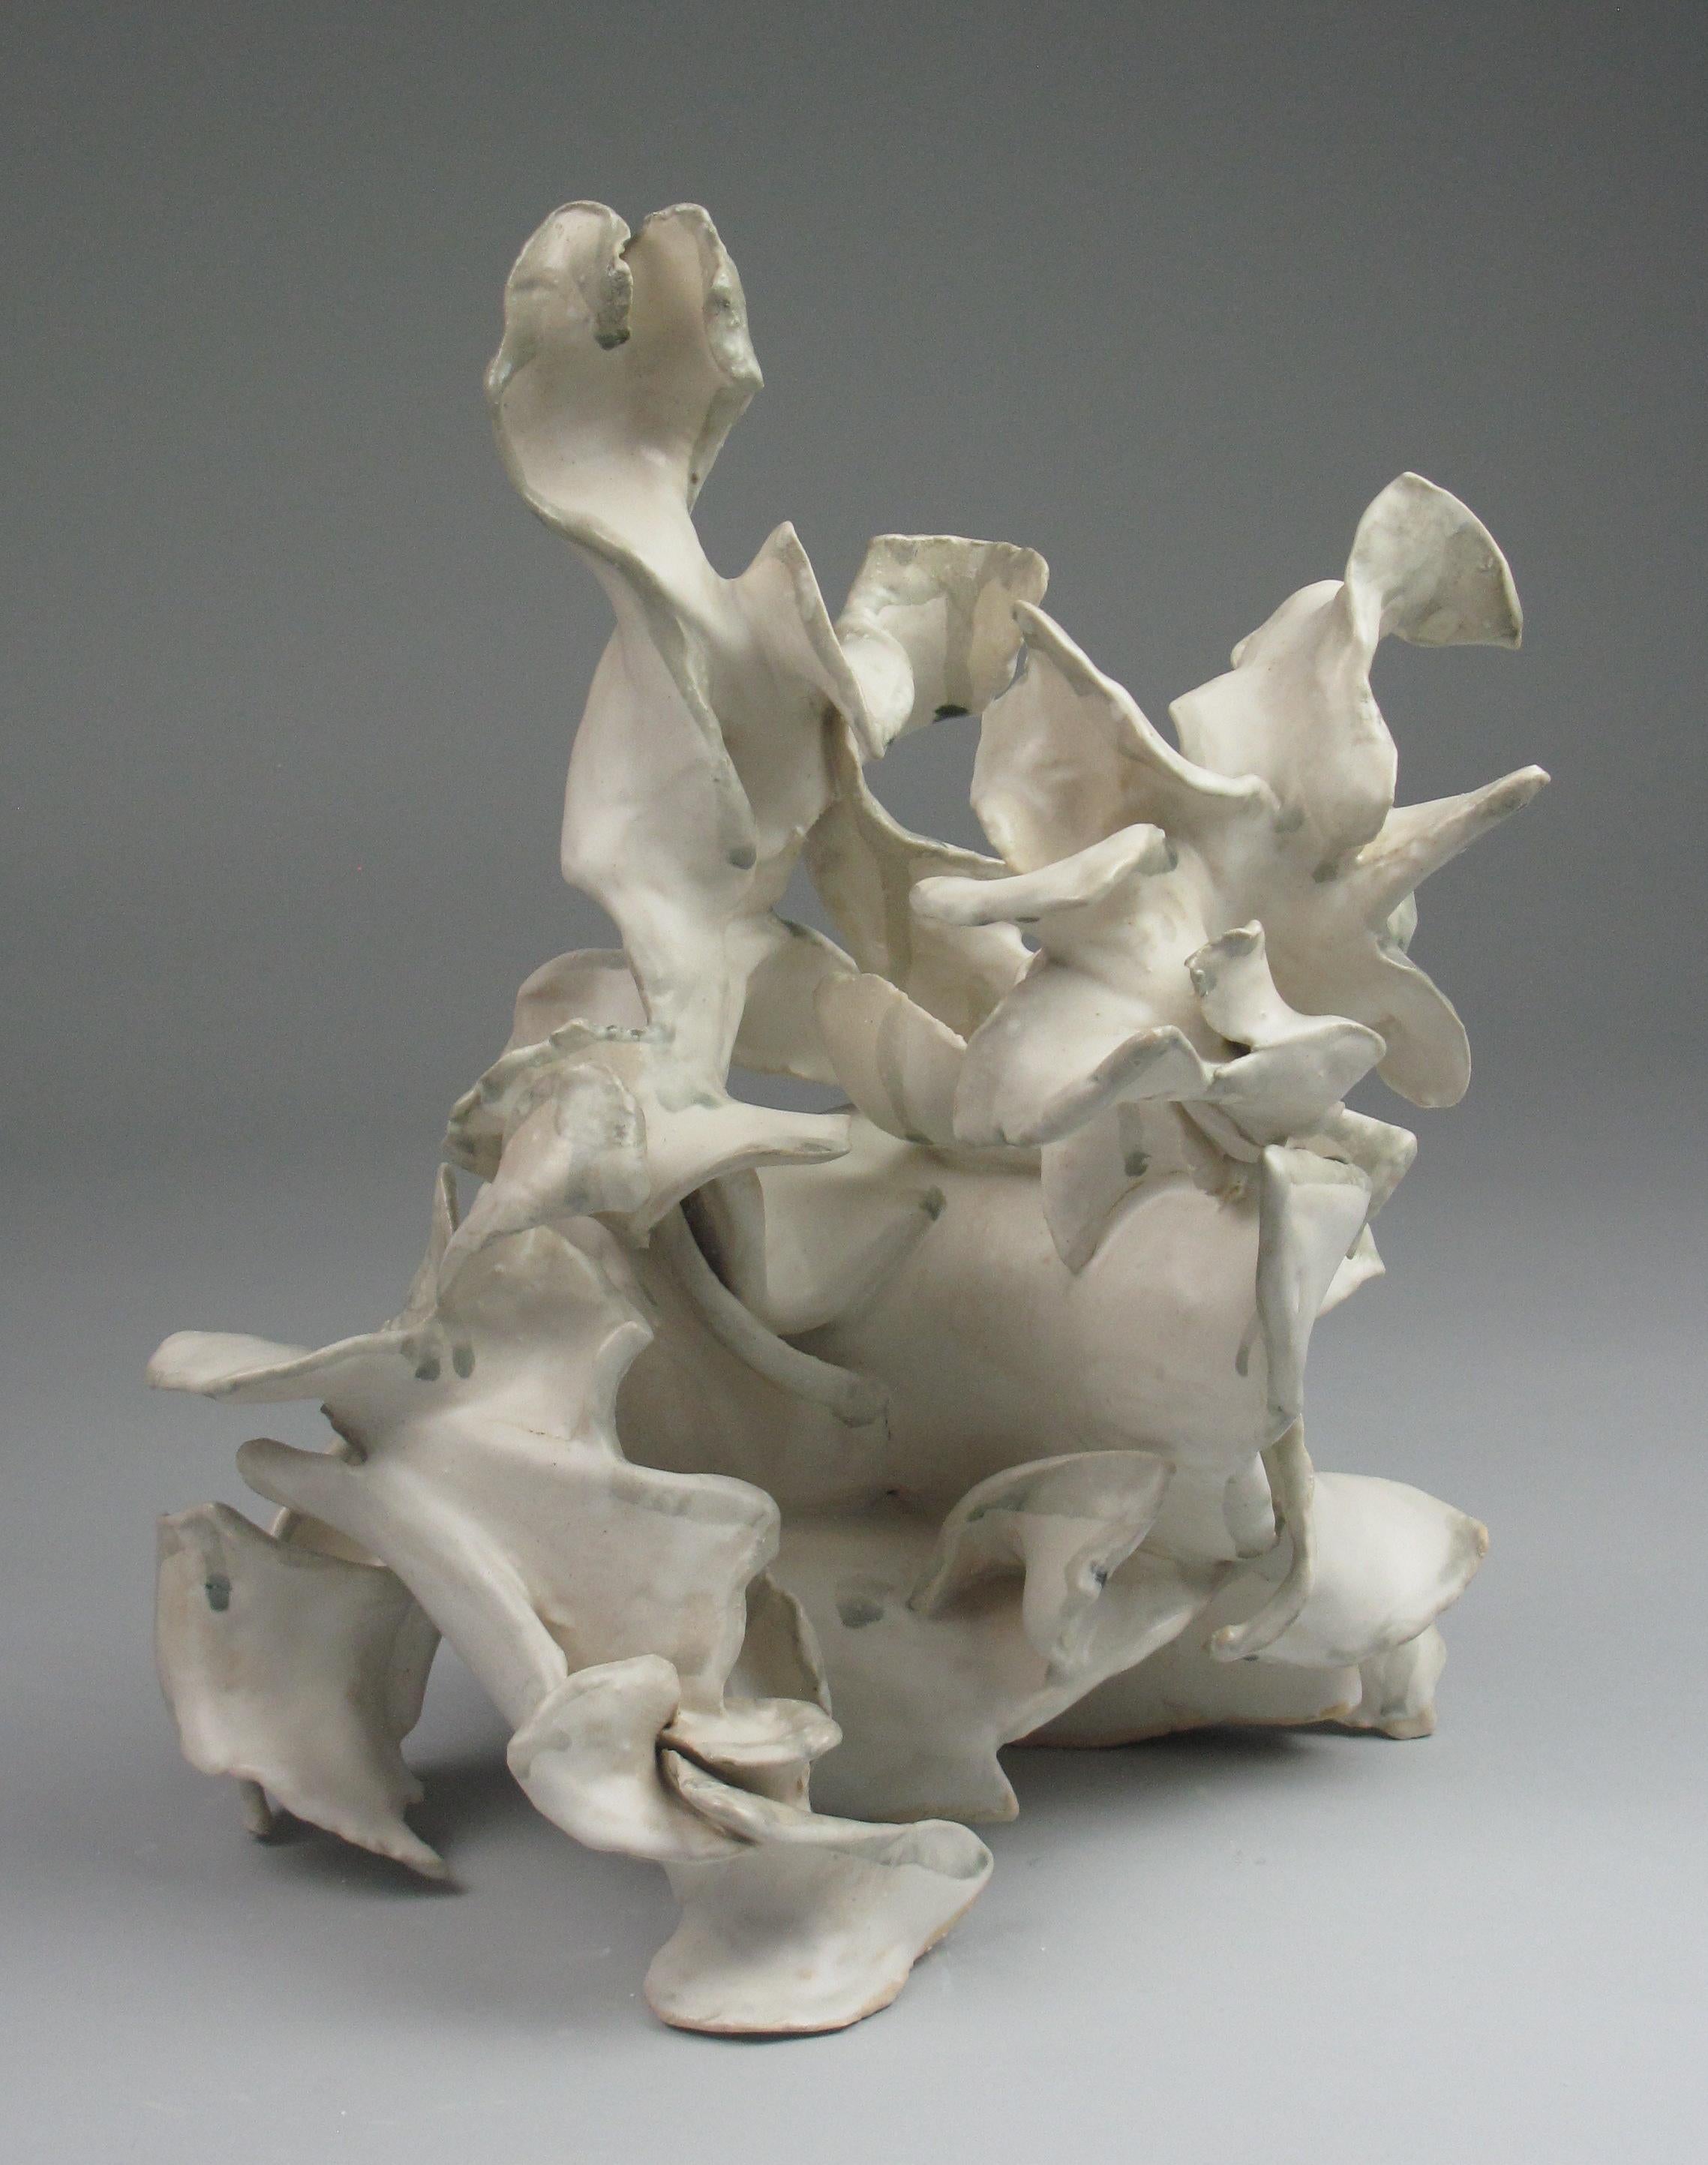 Abstract Sculpture Sara Fine-Wilson - "Heap", gestuel, céramique, sculpture, blanc, crème, gris, sarcelle, grès